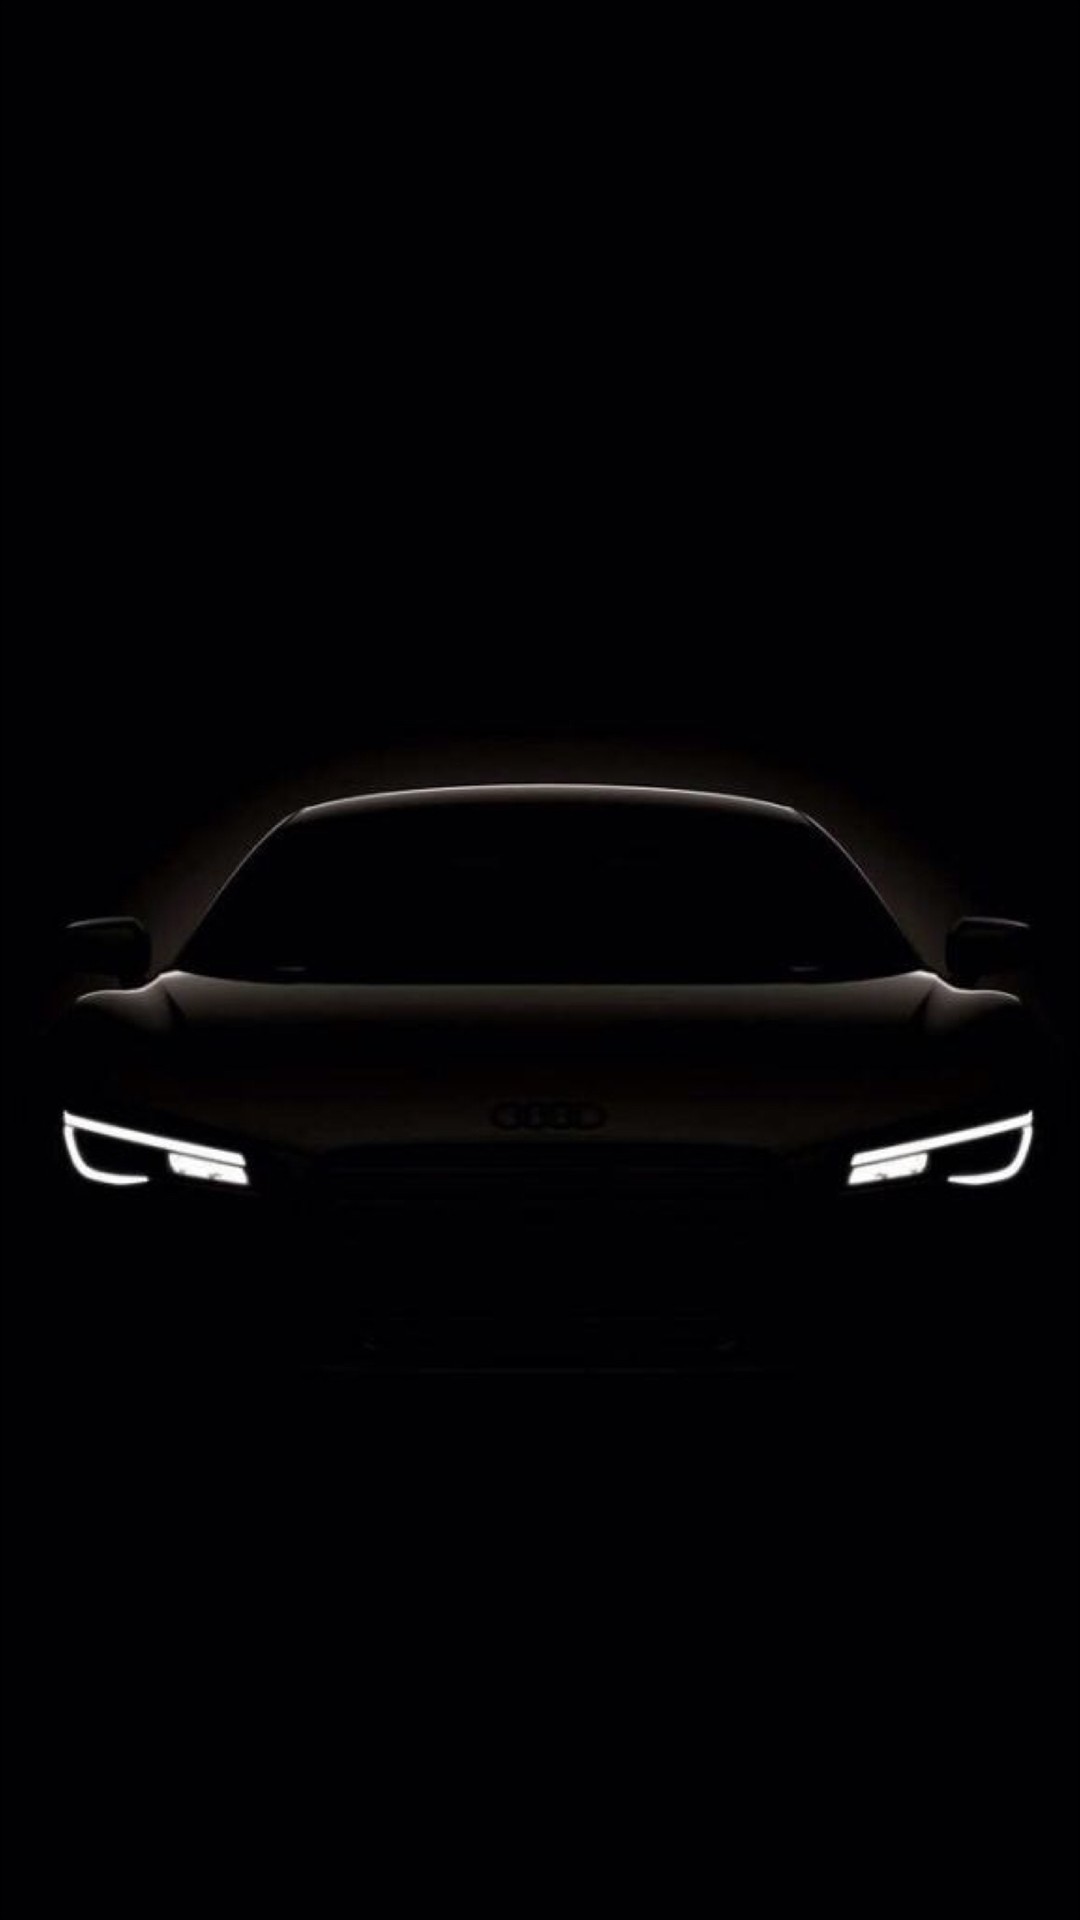 1080x1920 Dark Shiny Concept Car #iPhone #7 #wallpaper